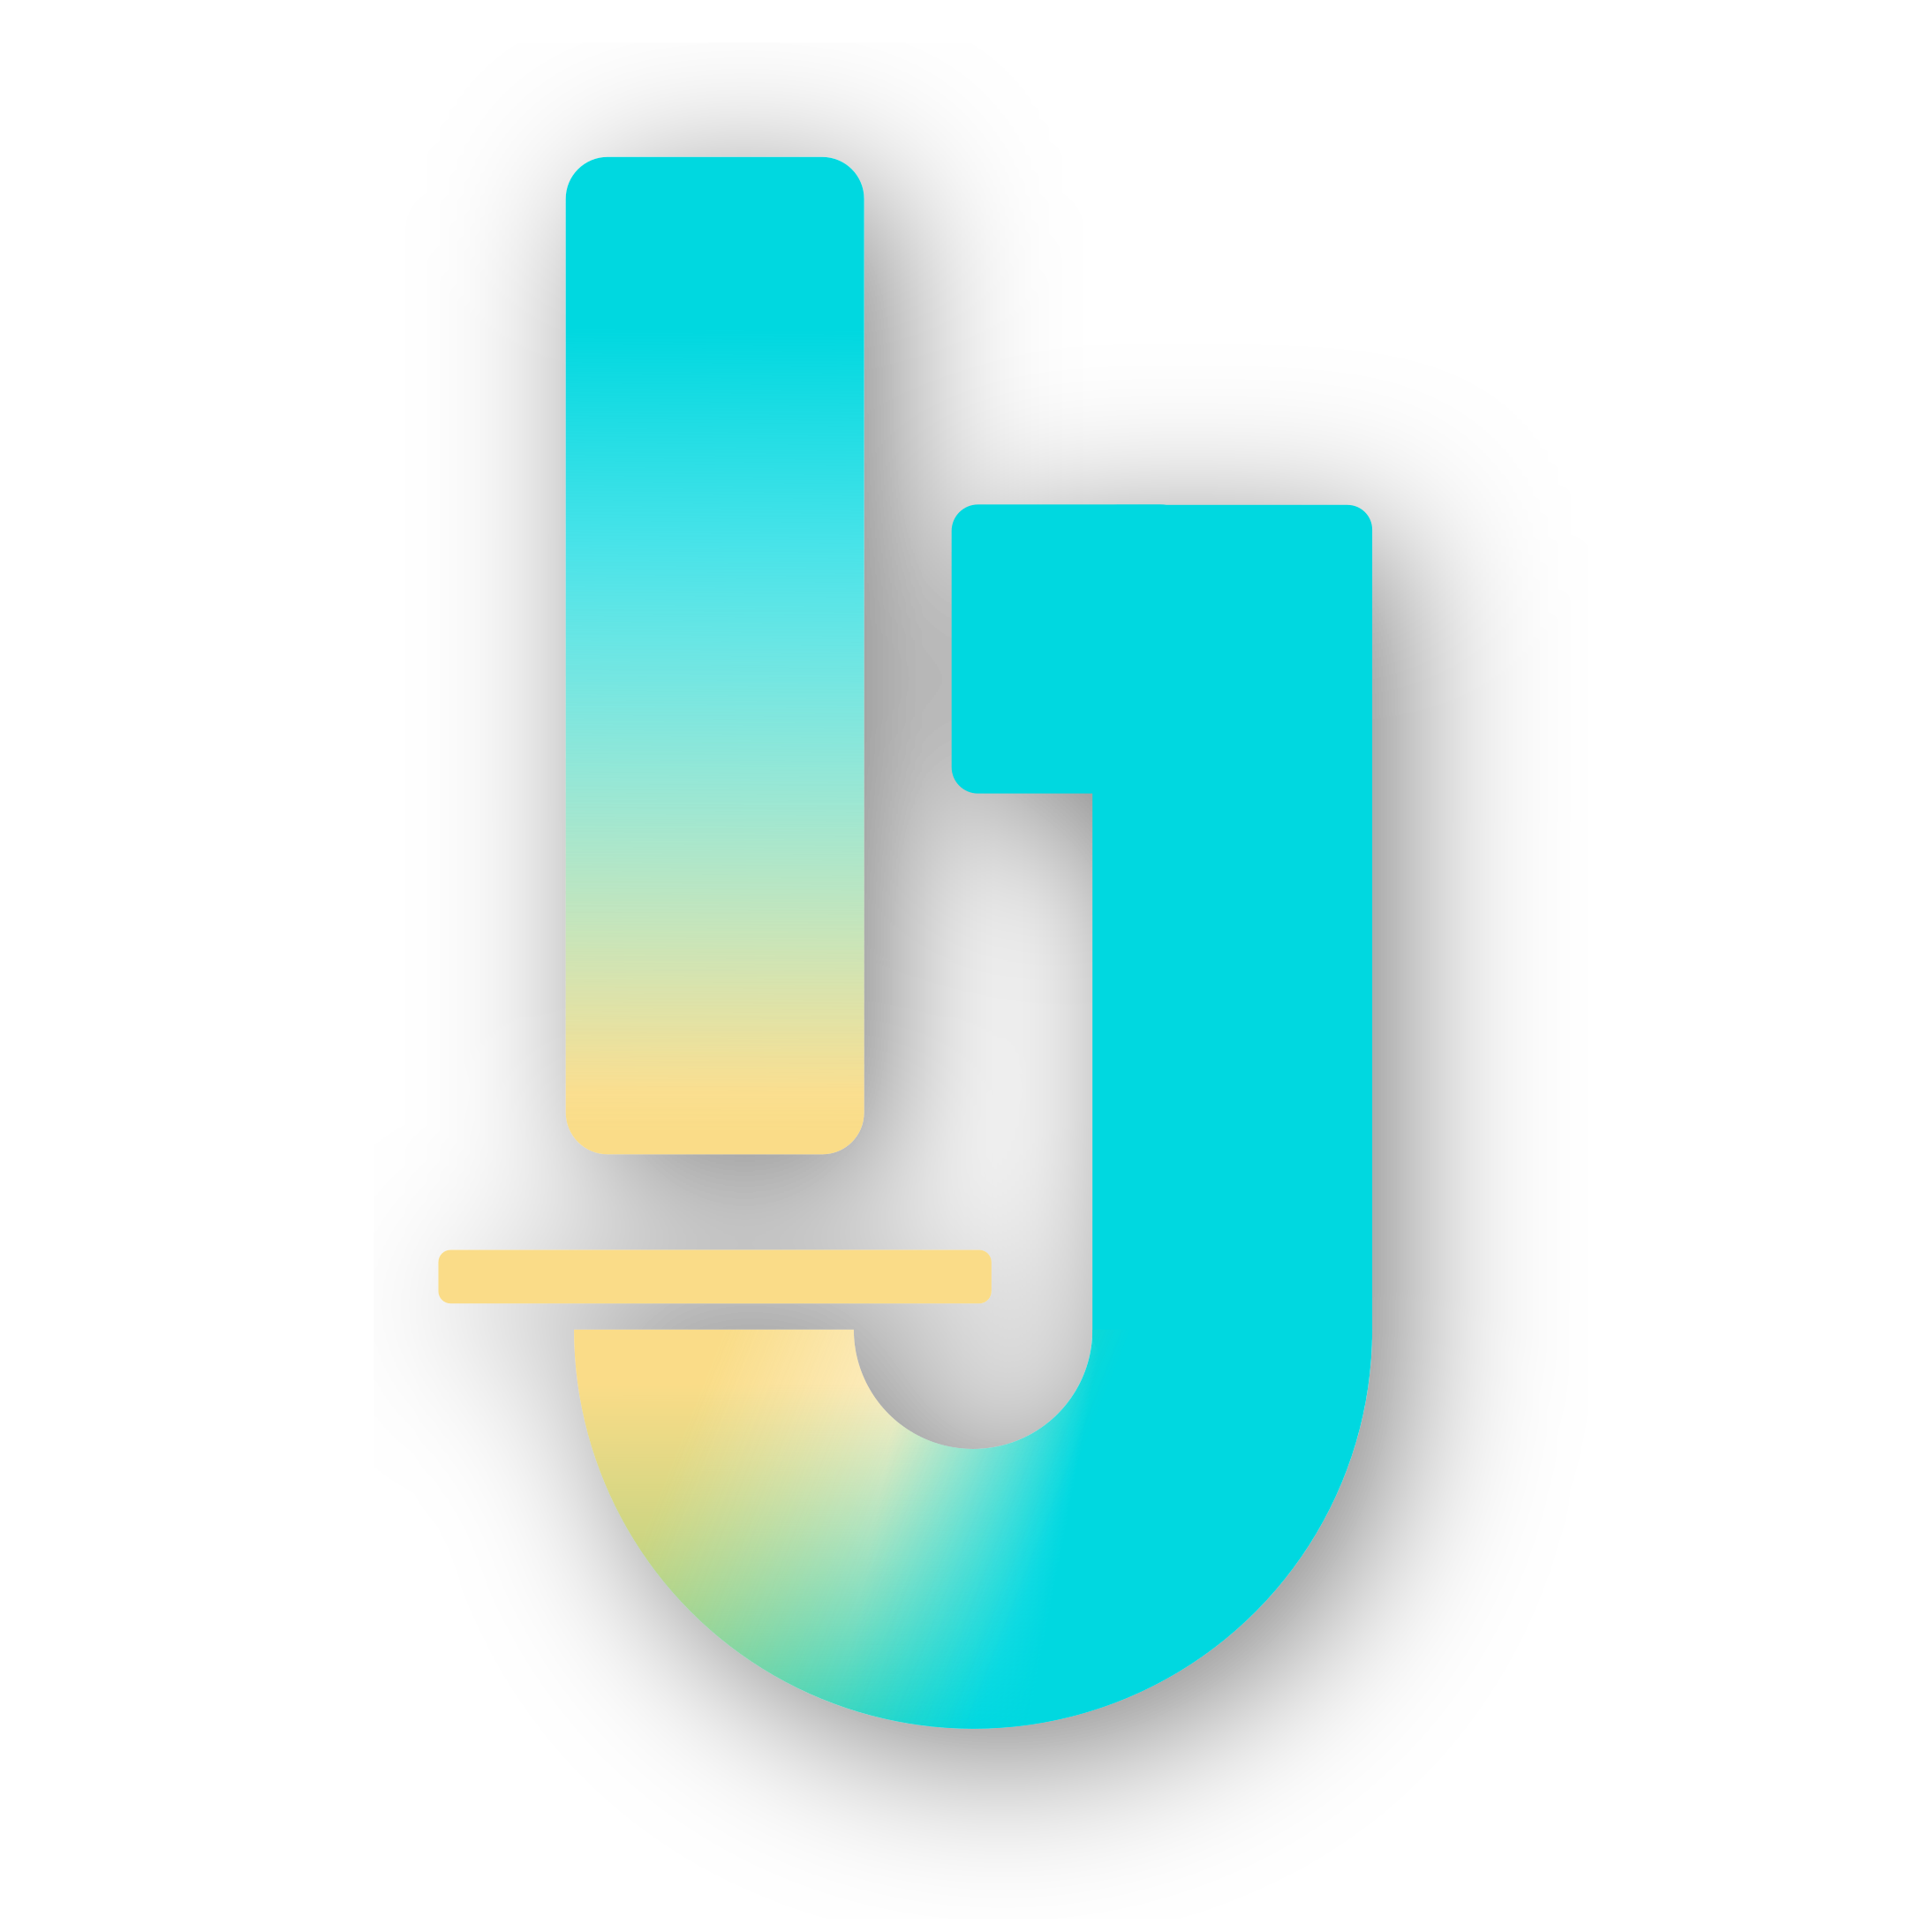 ImageJ2 Logo